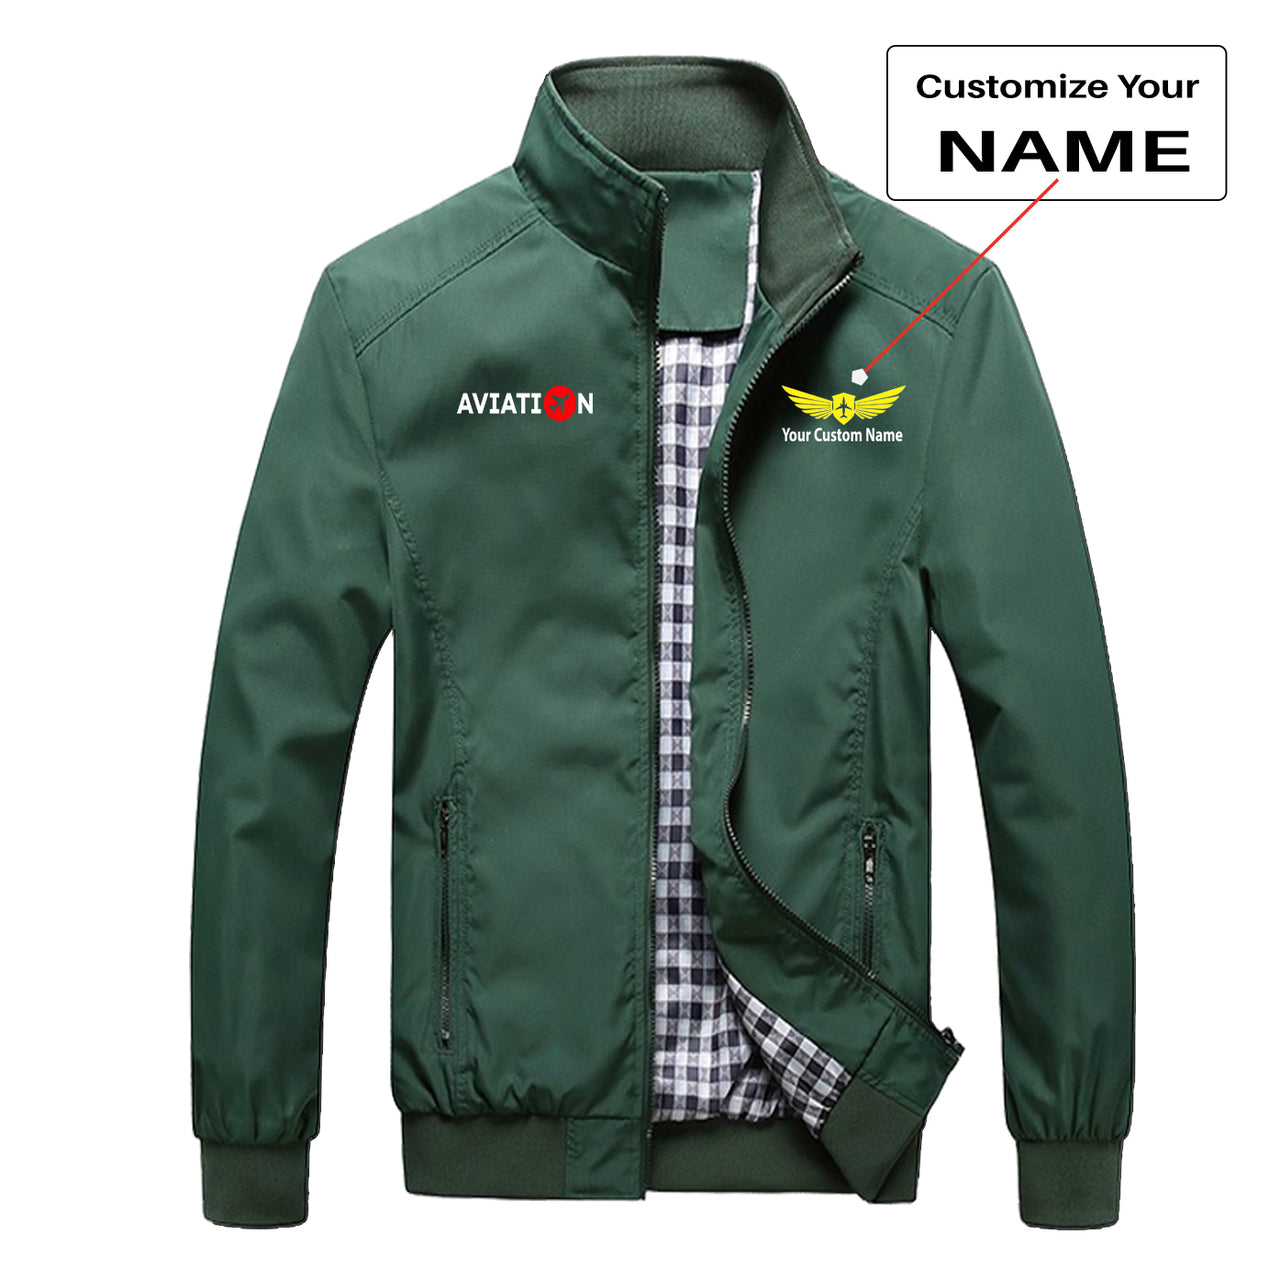 Aviation Designed Stylish Jackets